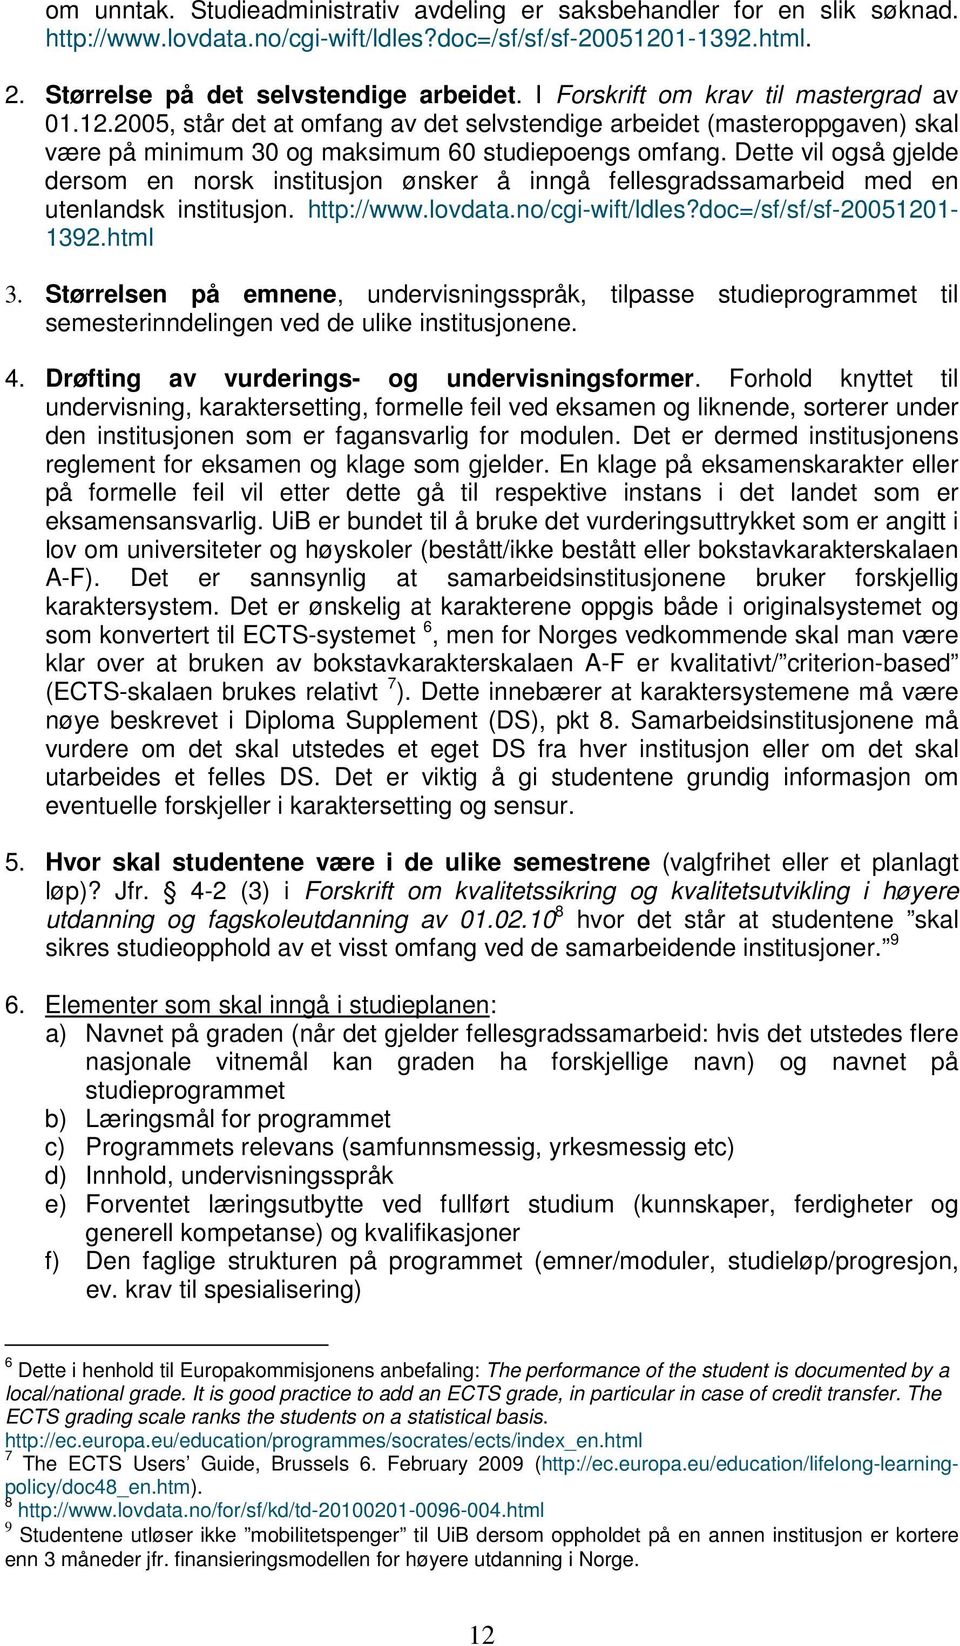 Dette vil også gjelde dersom en norsk institusjon ønsker å inngå fellesgradssamarbeid med en utenlandsk institusjon. http://www.lovdata.no/cgi-wift/ldles?doc=/sf/sf/sf-20051201-1392.html 3.